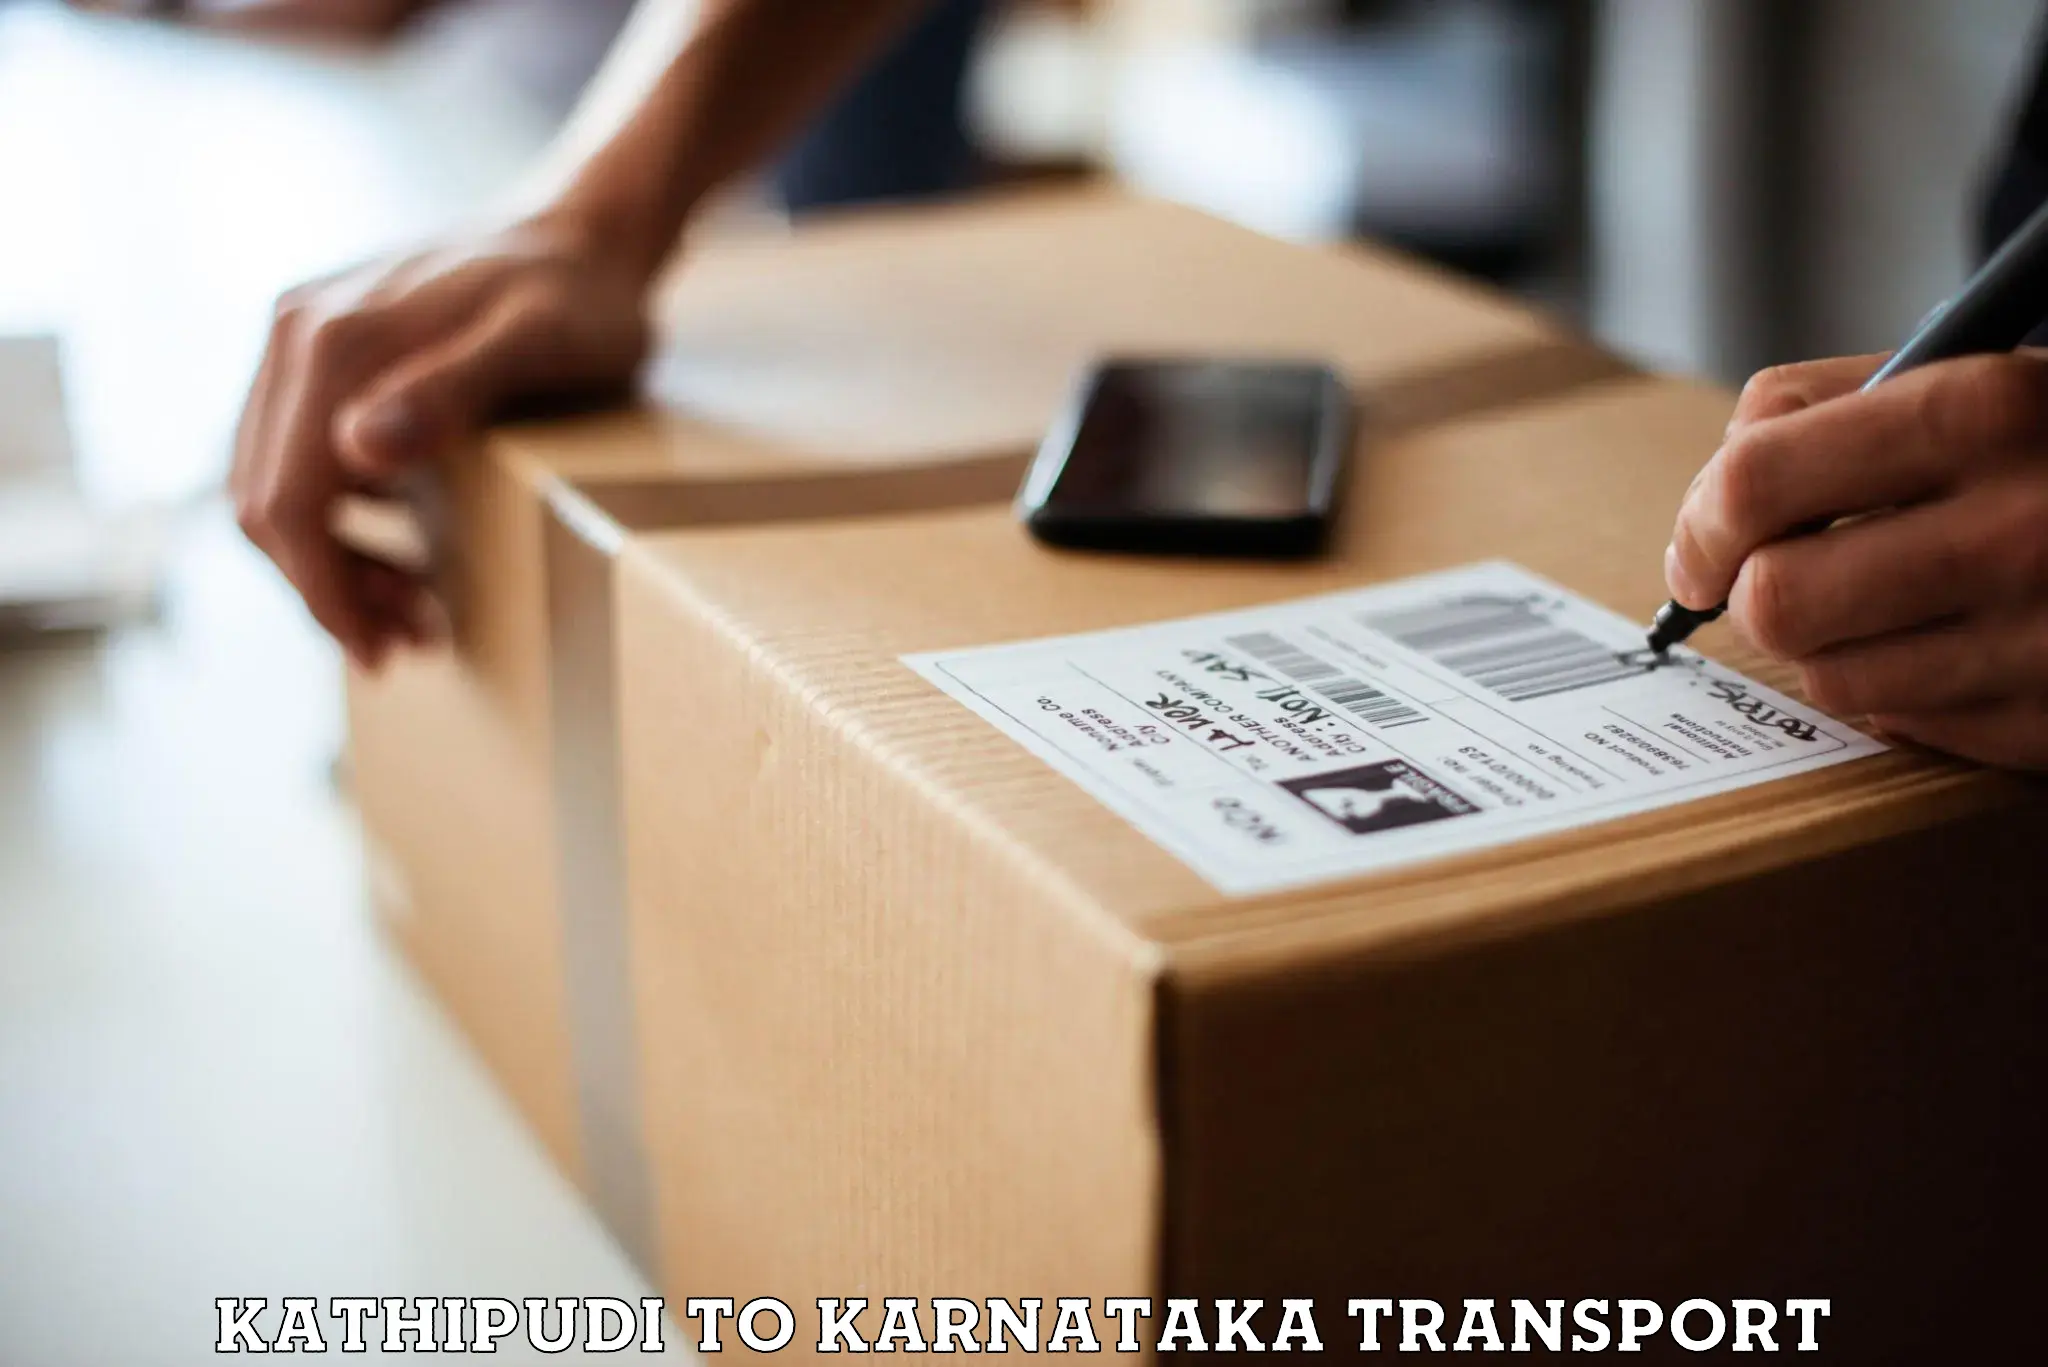 Daily parcel service transport Kathipudi to Basavana Bagewadi